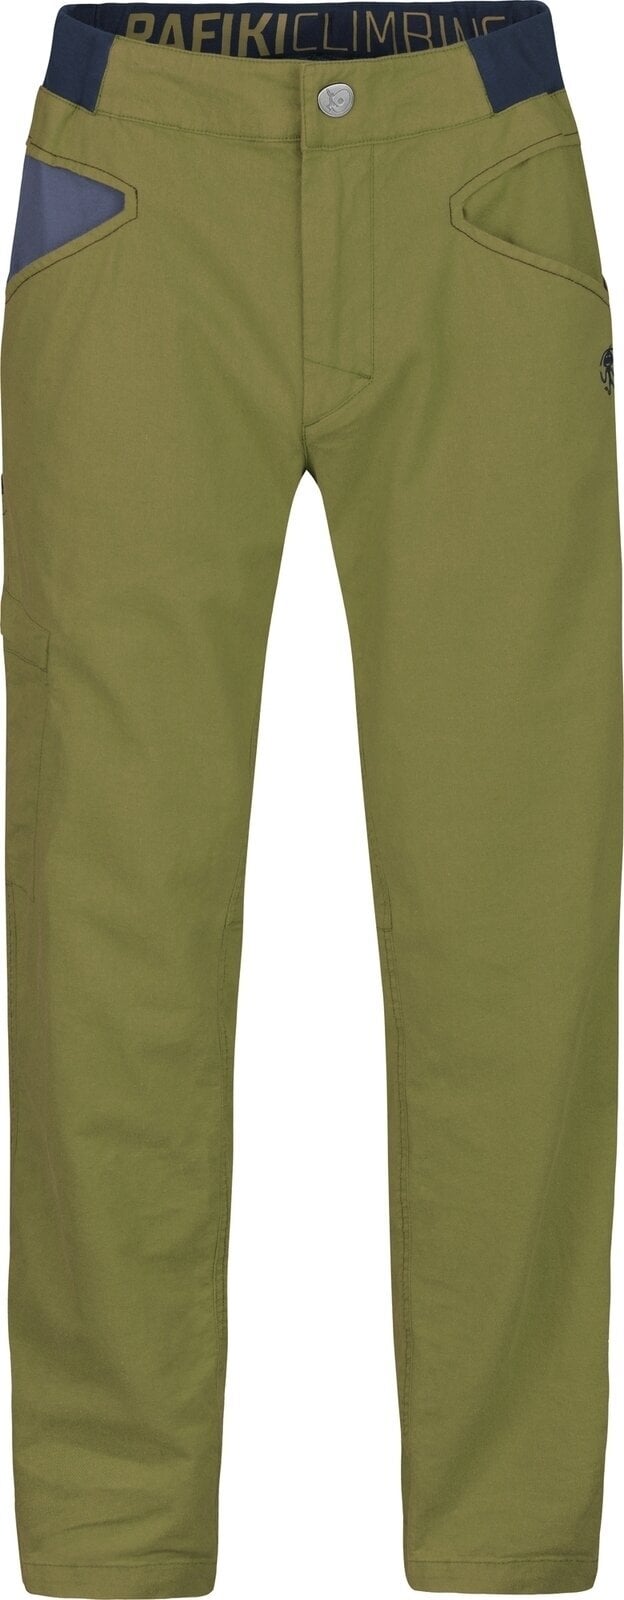 Pantalons outdoor Rafiki Grip Man Pants Avocado L Pantalons outdoor